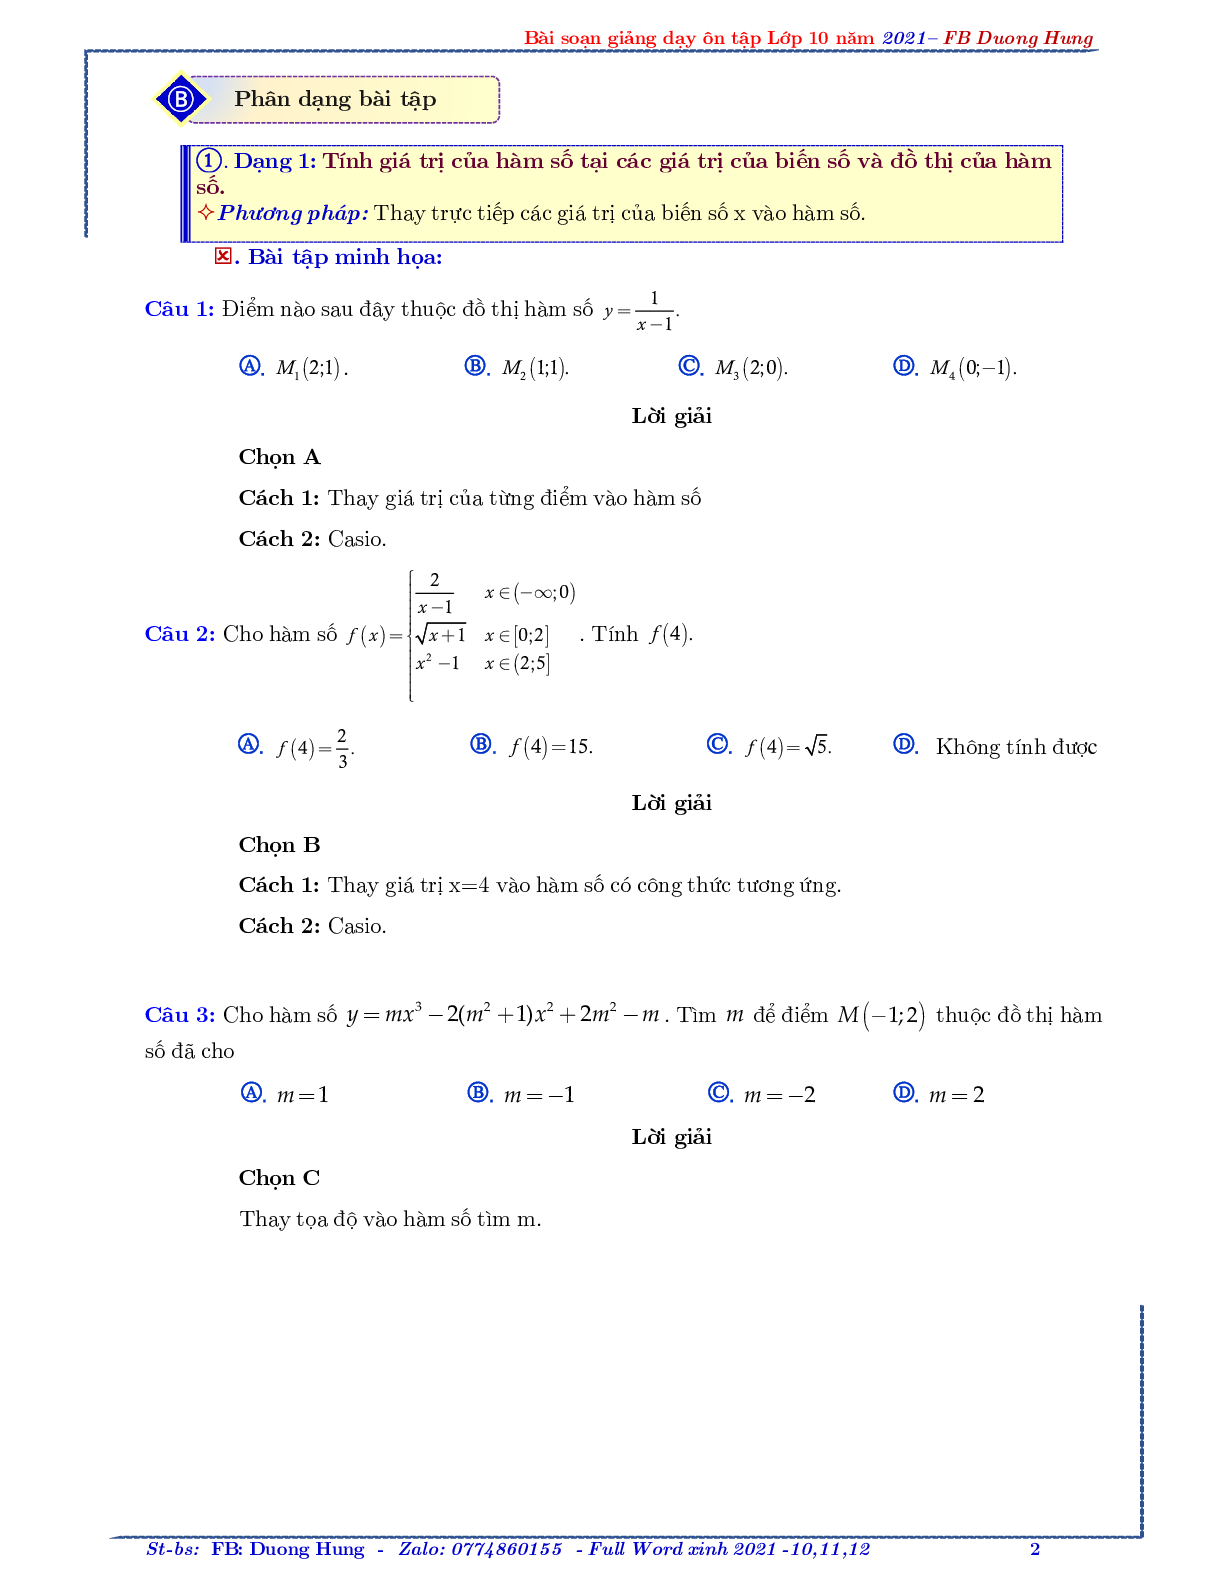 Chuyên đề về hàm số bậc nhất và bậc hai - bản 1 (trang 2)